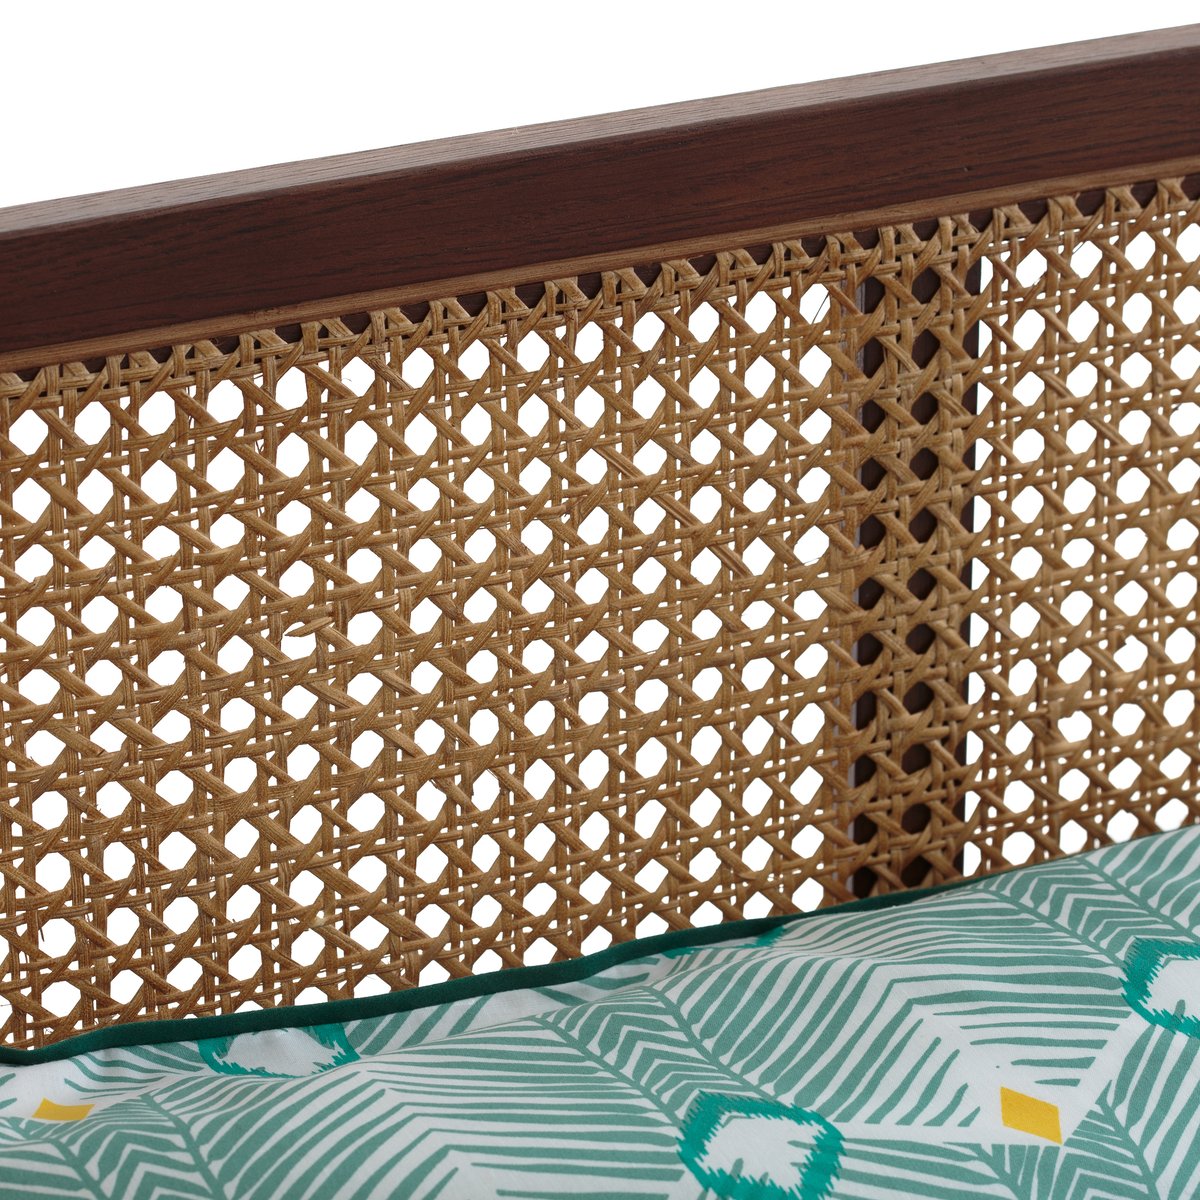 Кровать LaRedoute Винтажная из плетеного ротанга с сеткой NOYA 160 x 200 см каштановый, размер 160 x 200 см - фото 3